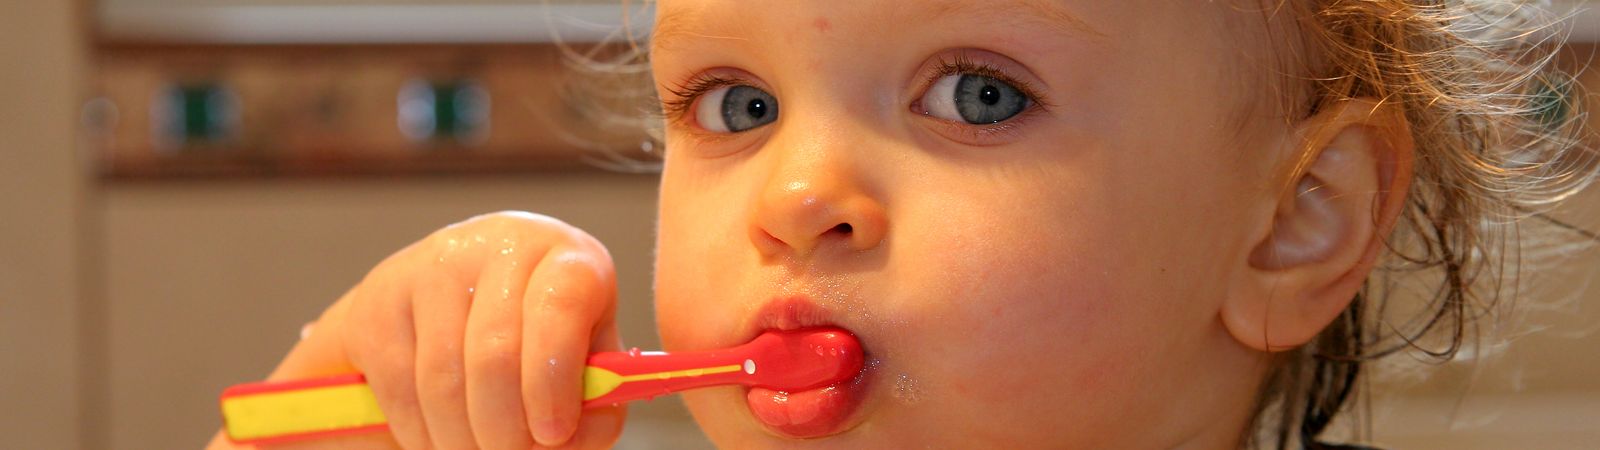 Bebeklerin Diş Bakımı Nasıl Olmalı?